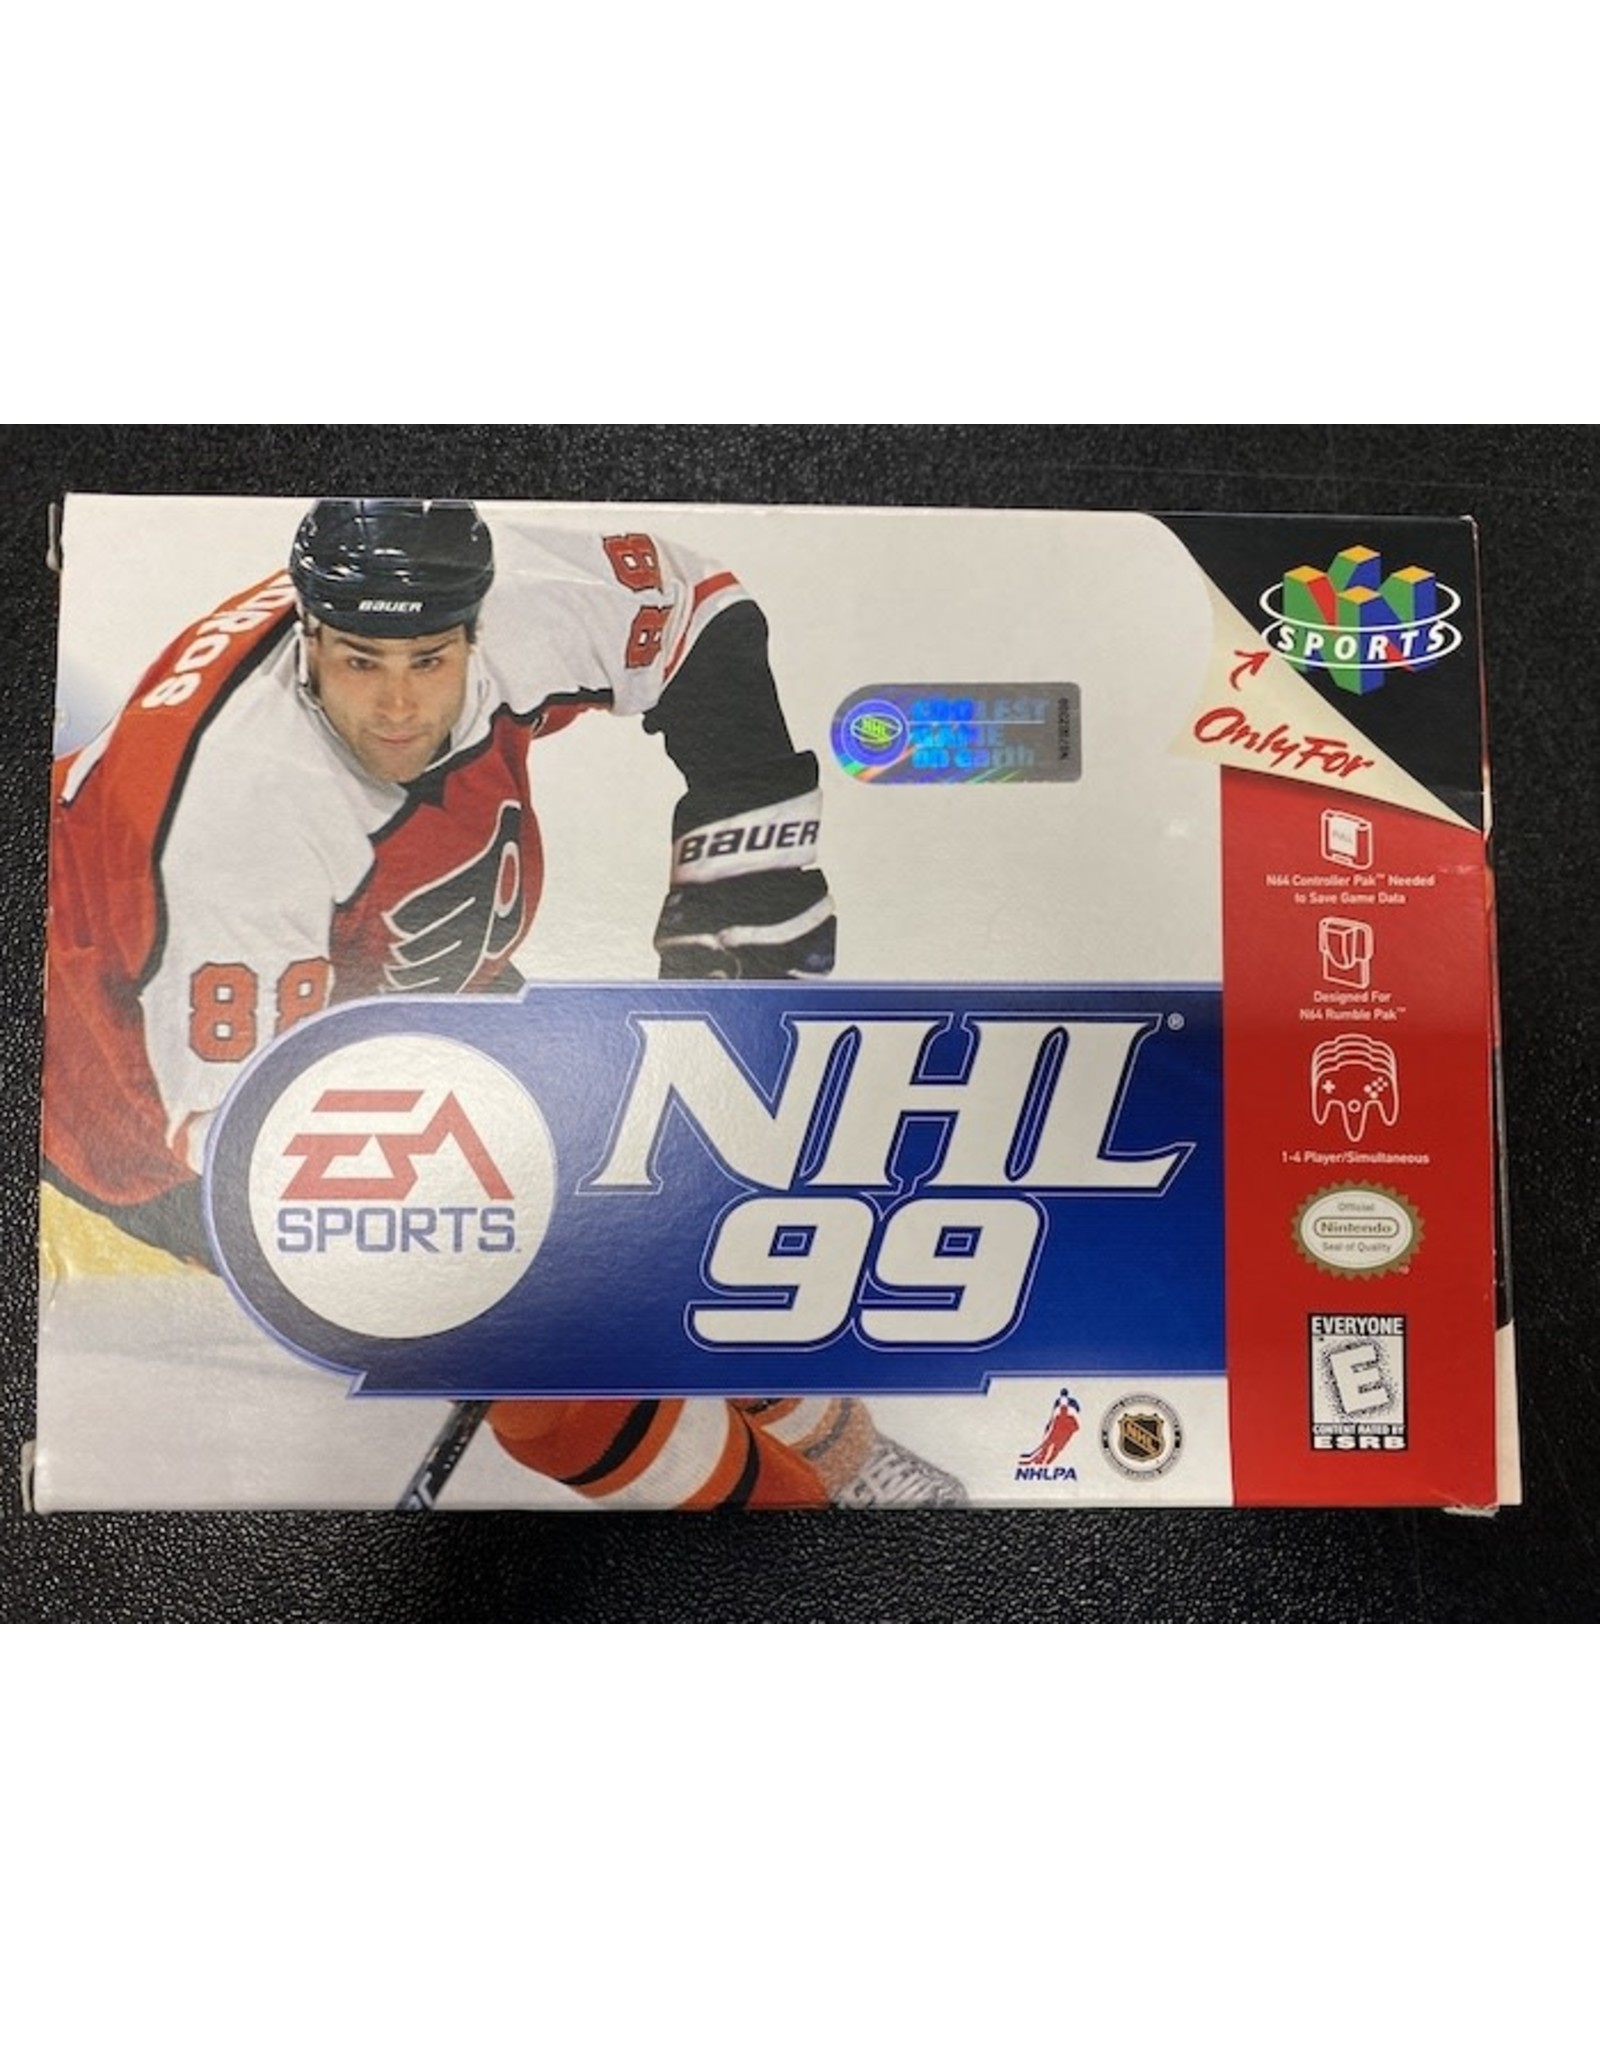 Post tonehøjde Følg os Nintendo 64 NHL 99 (Cart Only) - Video Game Trader